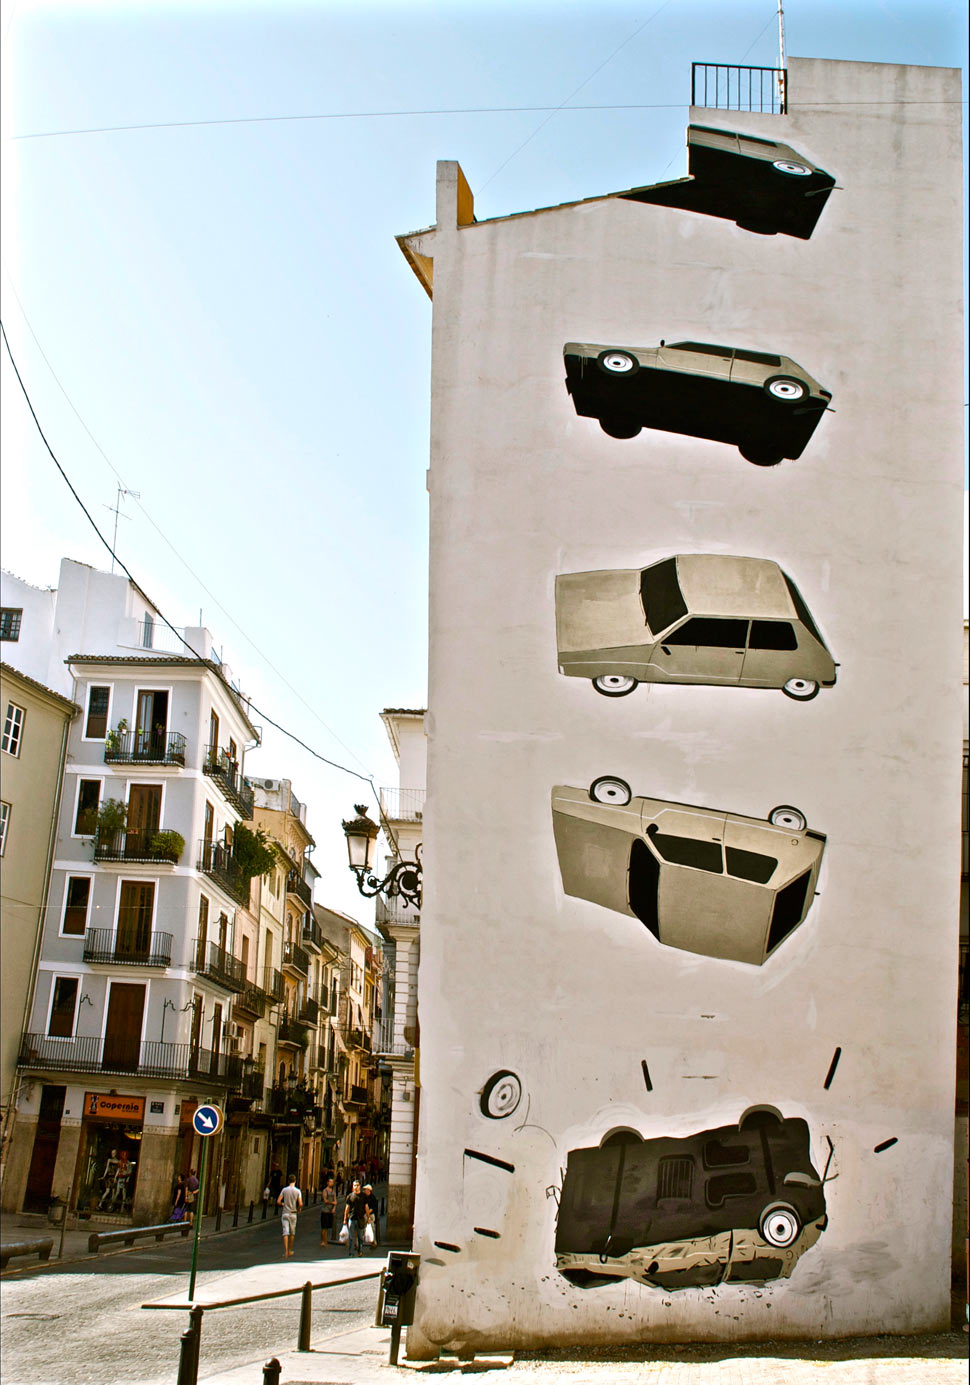  muro car valencia spain